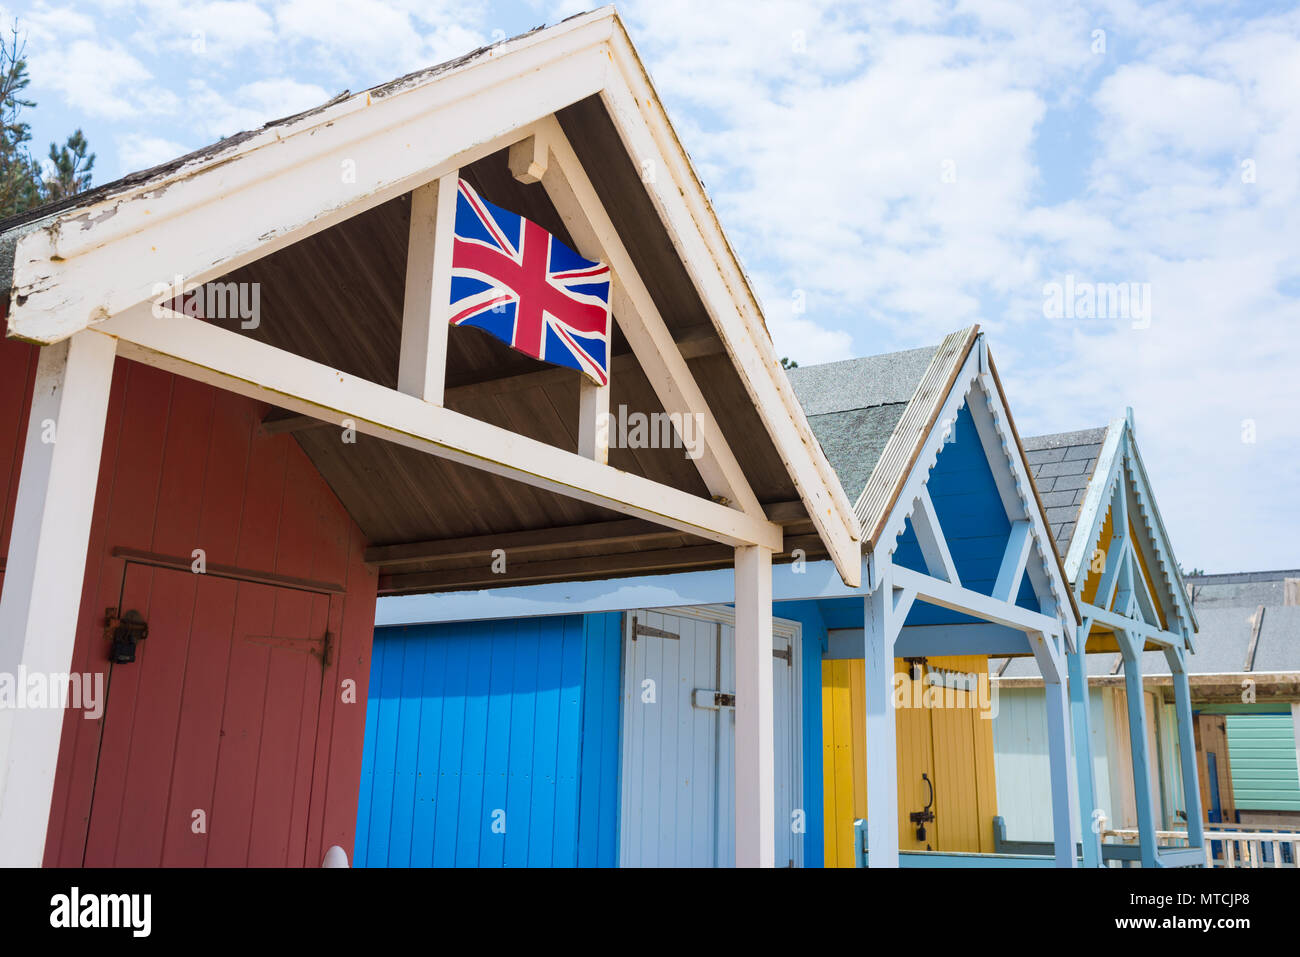 Farbige Strand Hütten Hütten mit dem britischen Union Jack Flagge von Hand bemalt, auf Stockfoto